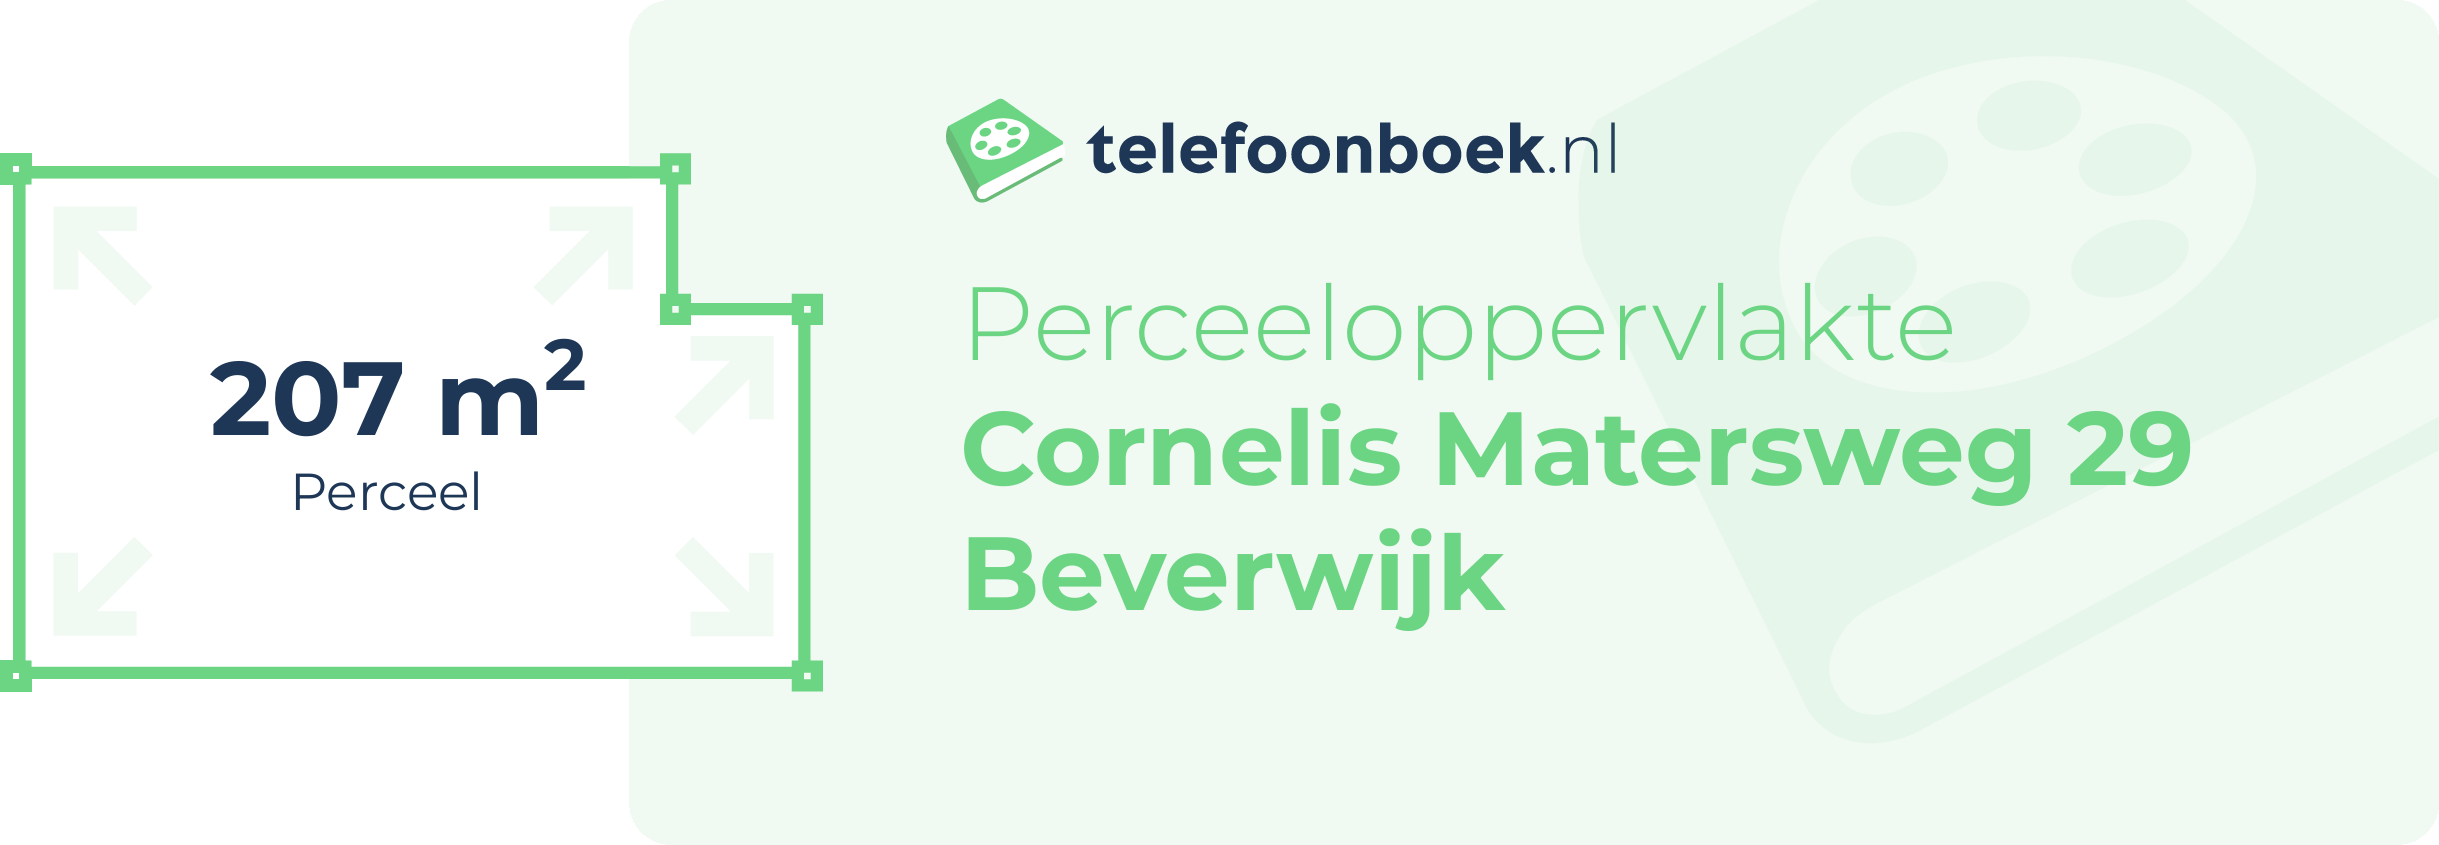 Perceeloppervlakte Cornelis Matersweg 29 Beverwijk